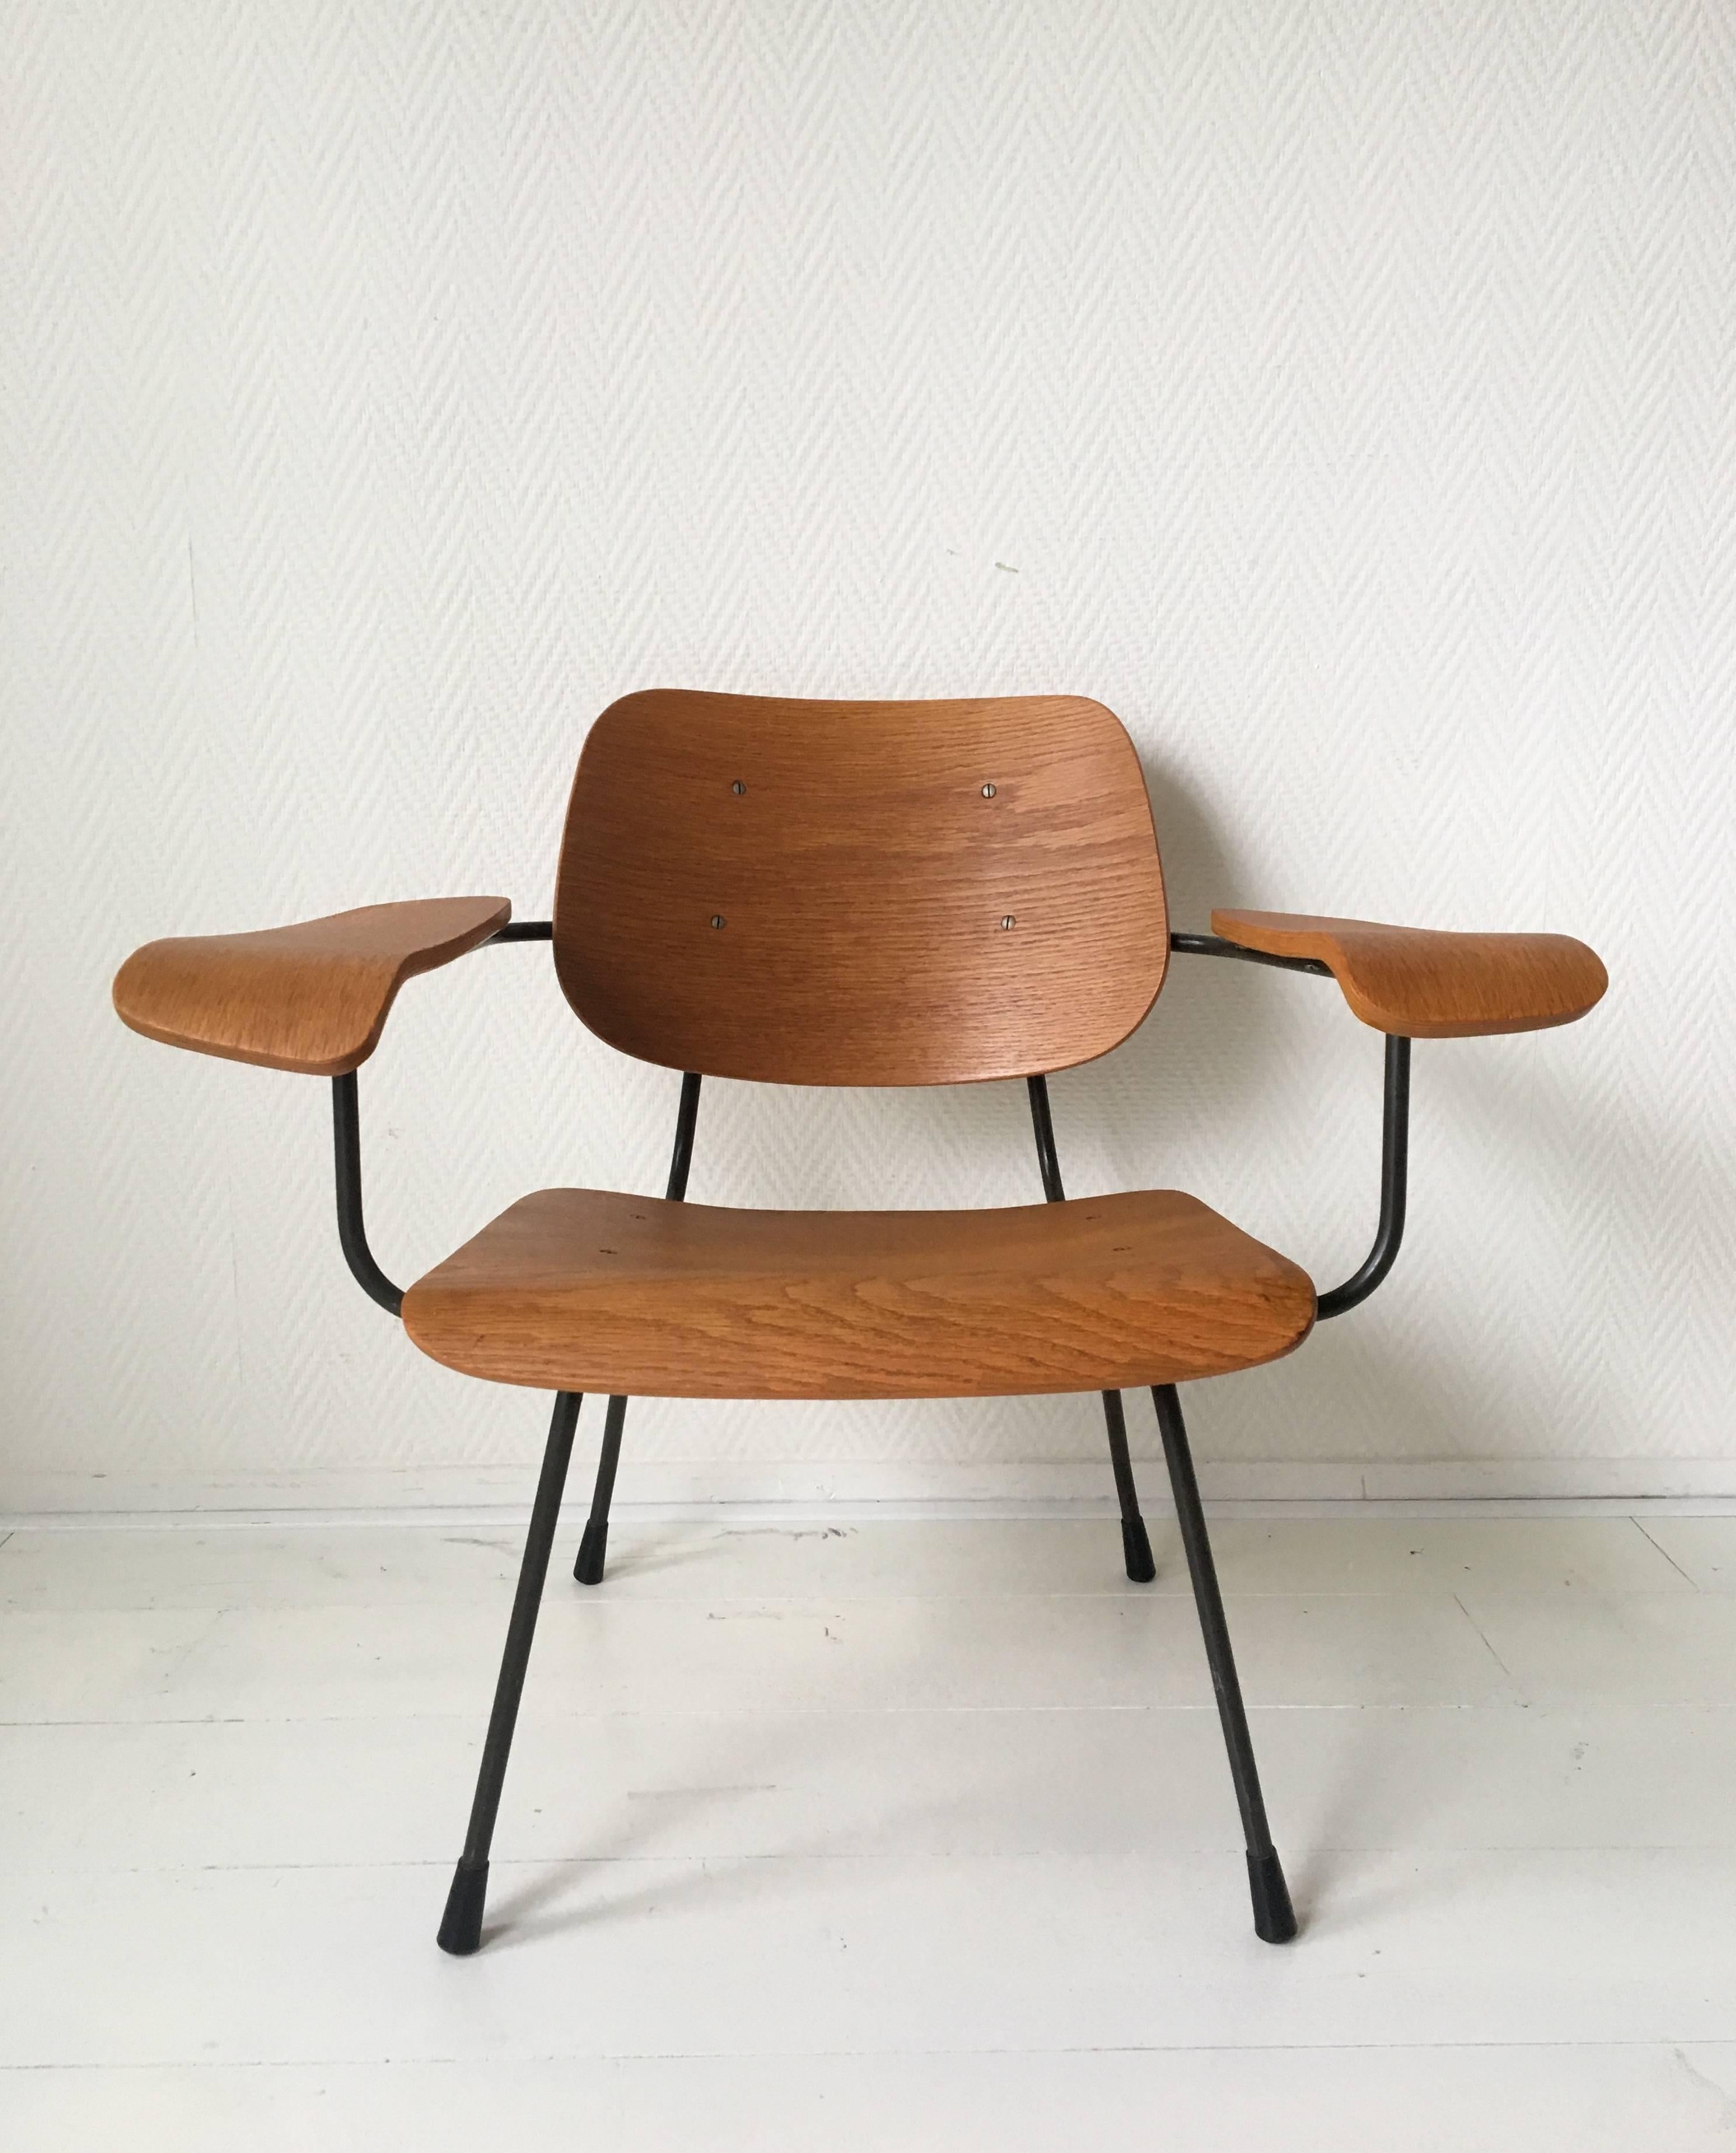 Design industriel du milieu du siècle par Tjerk Reijenga pour Pilastro en 1962.
La chaise est composée d'une structure métallique de couleur anthracite foncé, d'accoudoirs, d'un dossier et d'une assise en contreplaqué de teck. Très bon état et